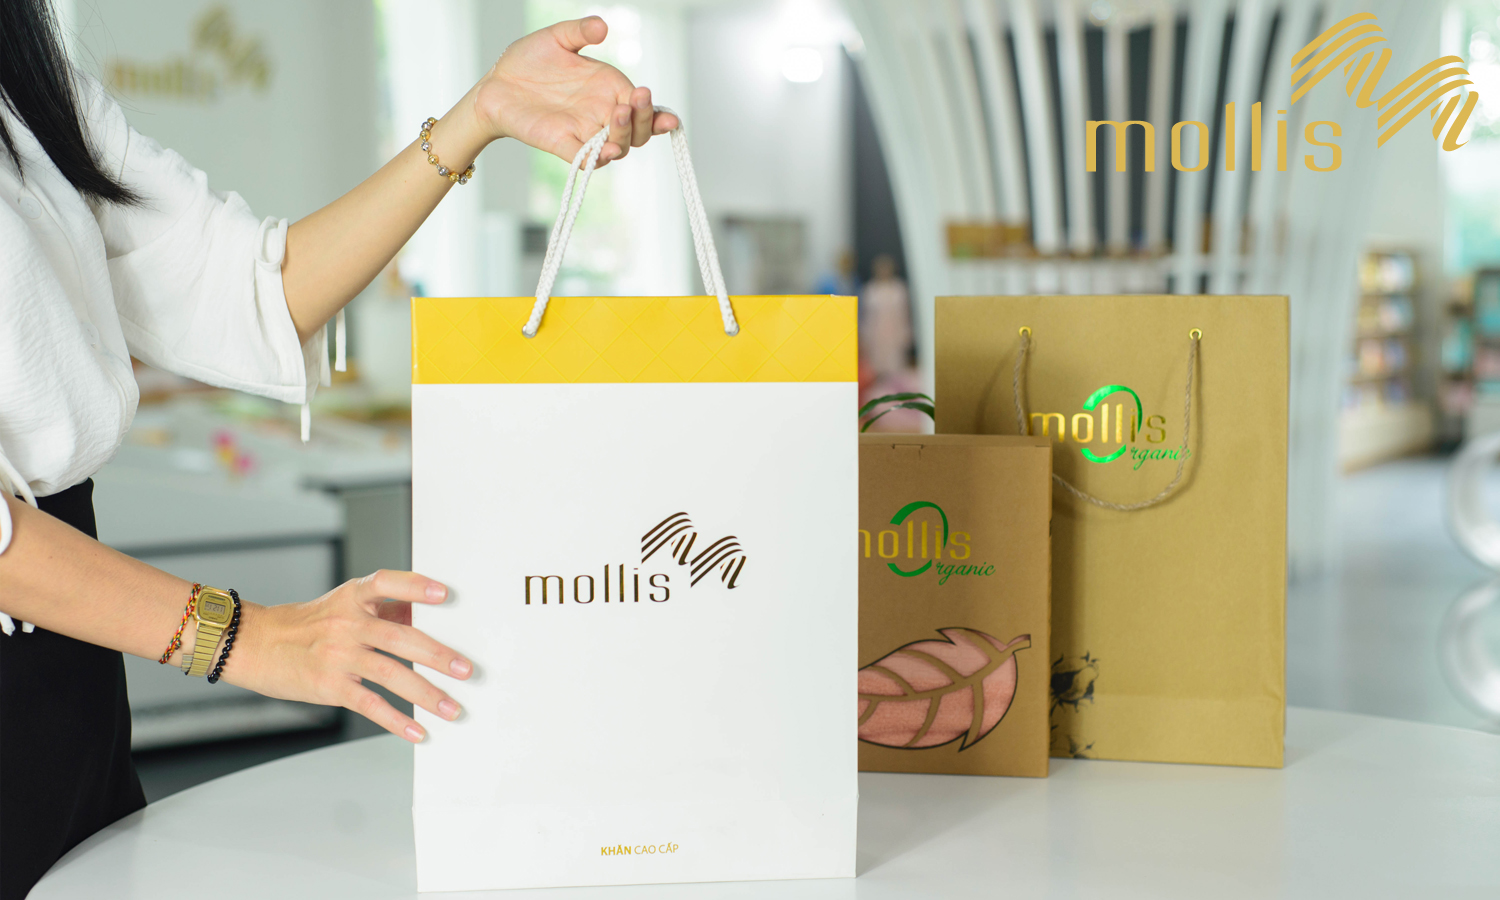 Mollis - Hành trình chinh phục người tiêu dùng bằng cấp chất lượng